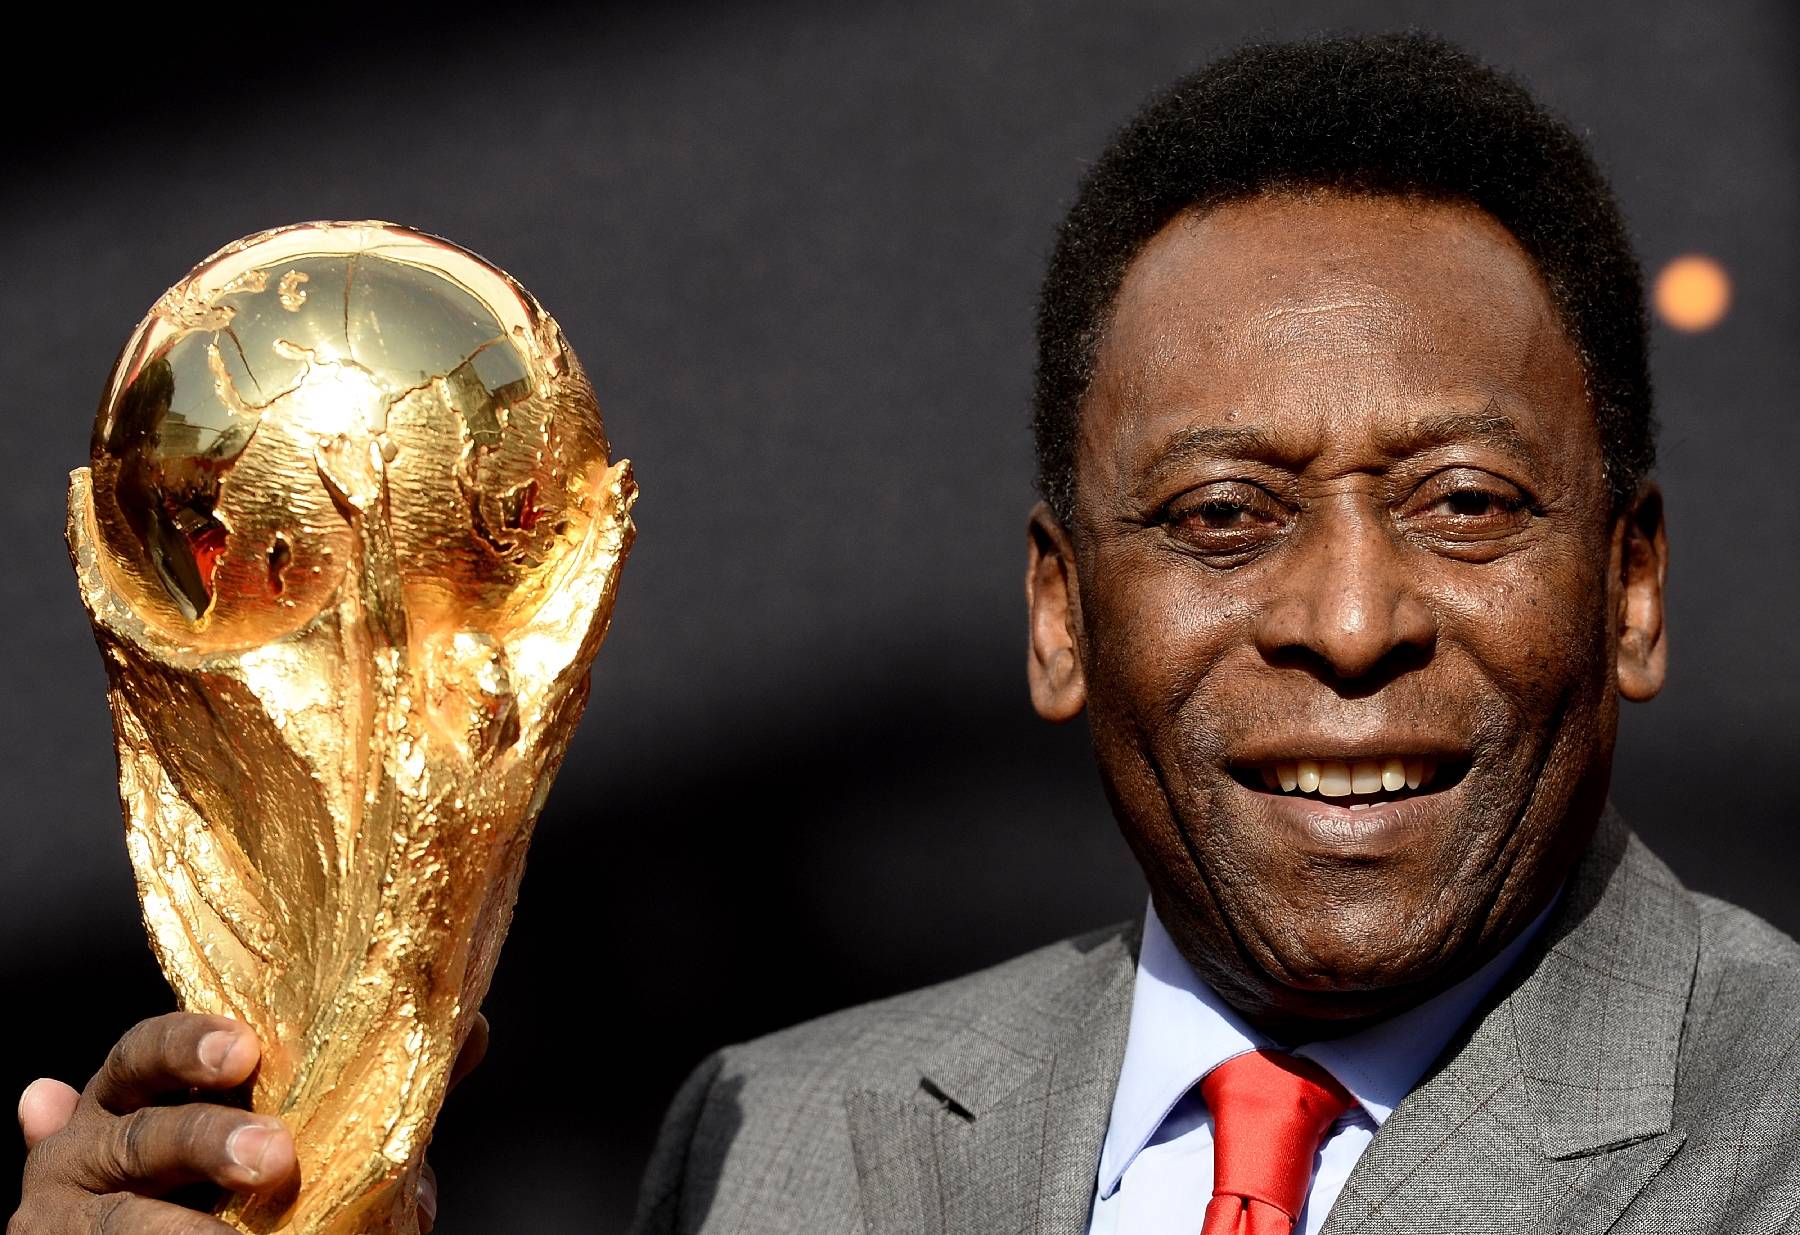 Le Roi est mort : le monde du football pleure Pelé, suivez notre direct